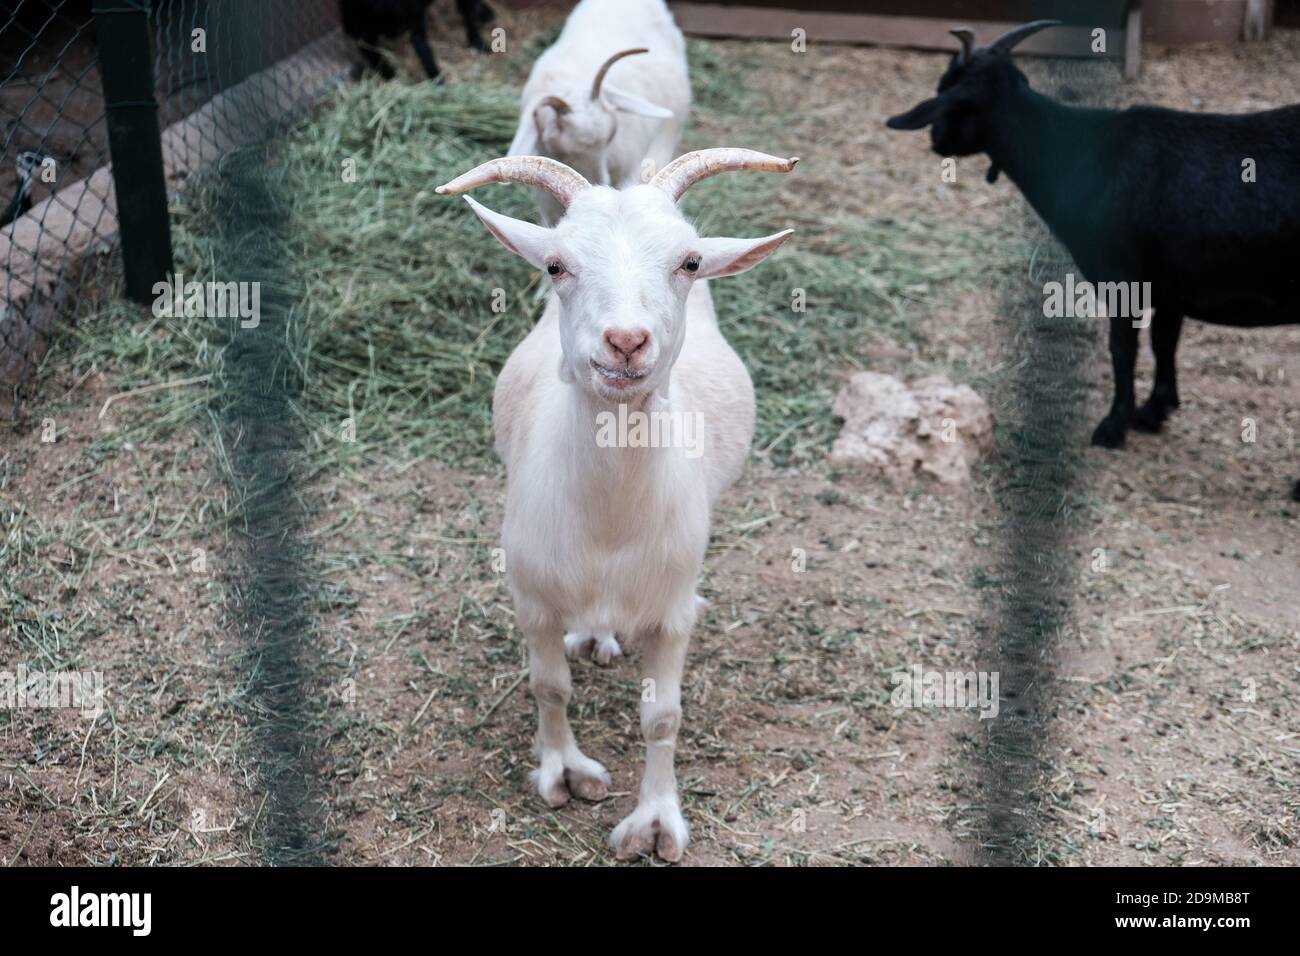 Blanc drôle chèvre heureux souriant derrière une clôture dans un zoo ou sur une ferme. Élevage pour le lait et le fromage. Animaux domestiques détenus en captivité dans une grange. Banque D'Images